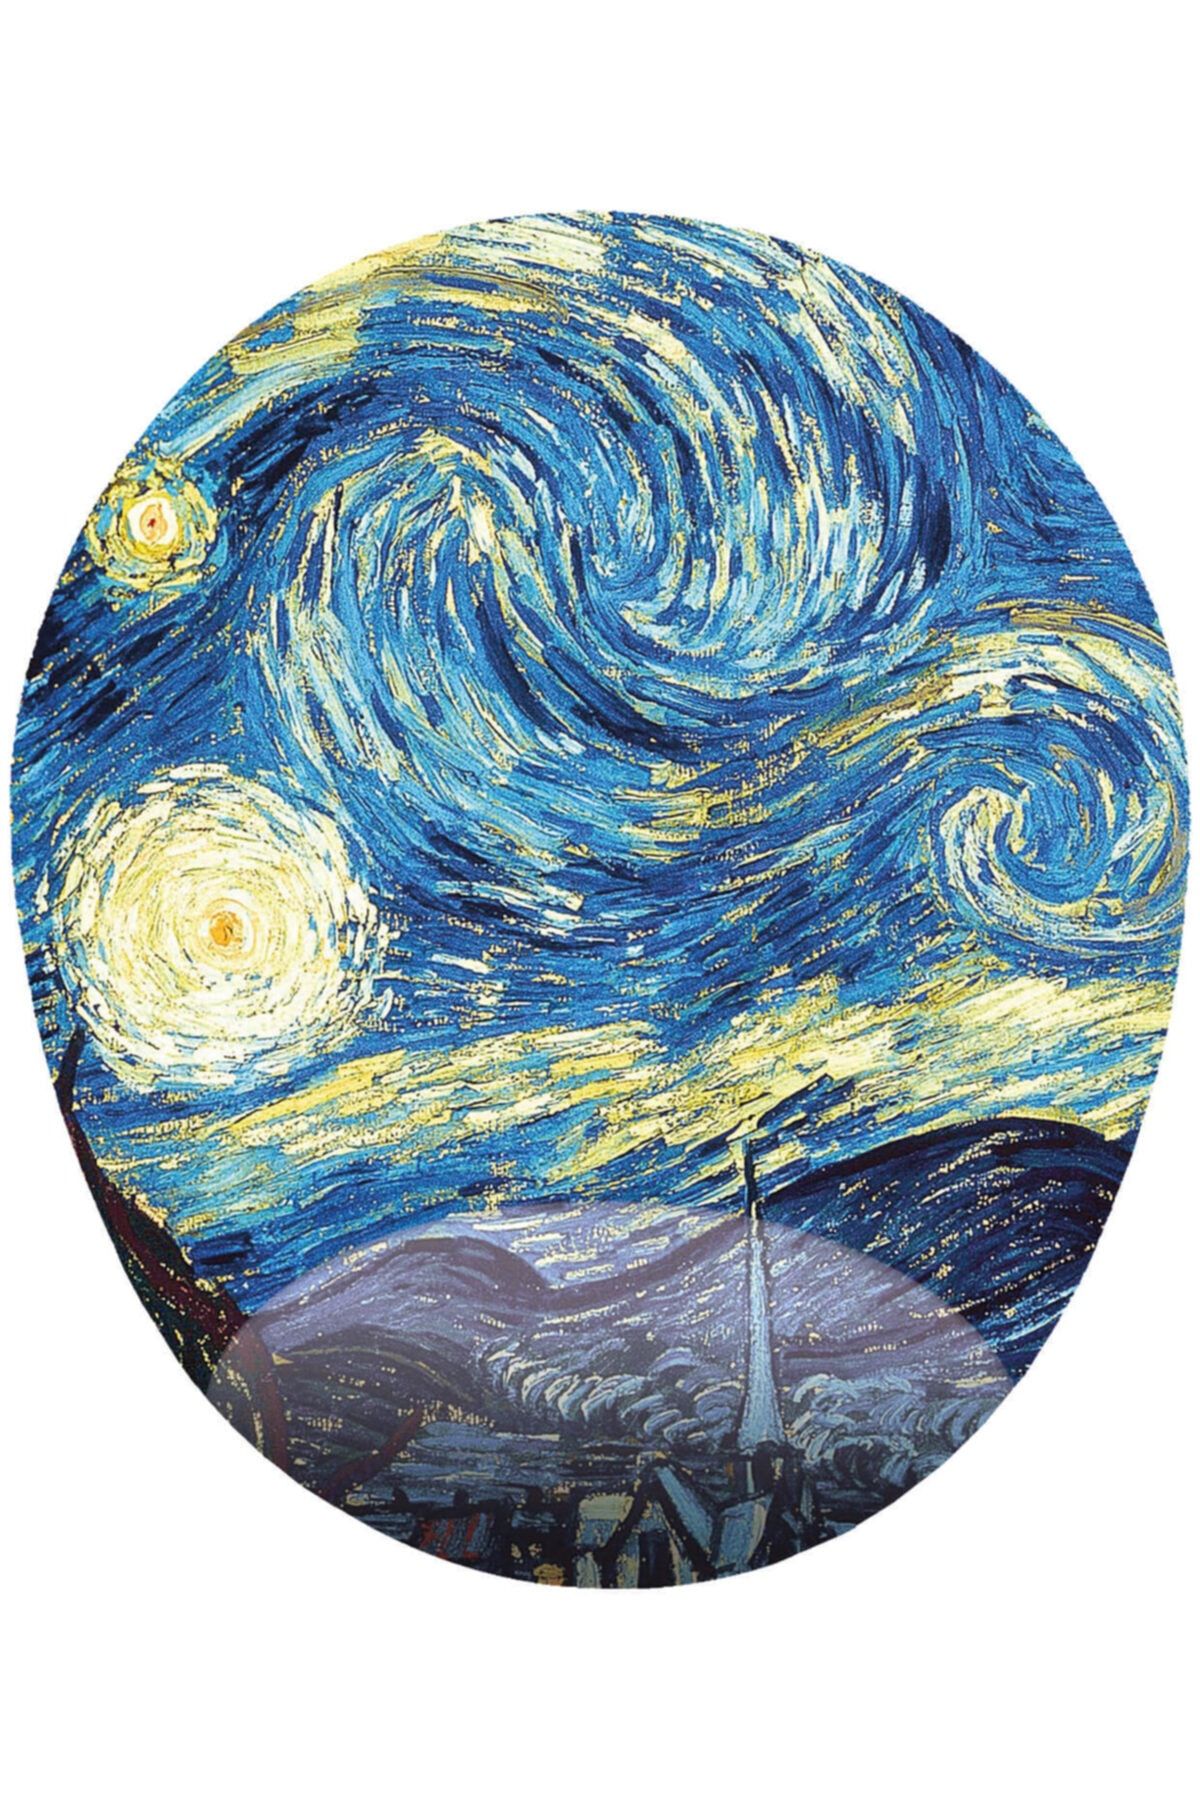 MAĞAZA DEPOM Yıldızlı Gece Van Gogh  Bilek Destekli Oval Mousepad